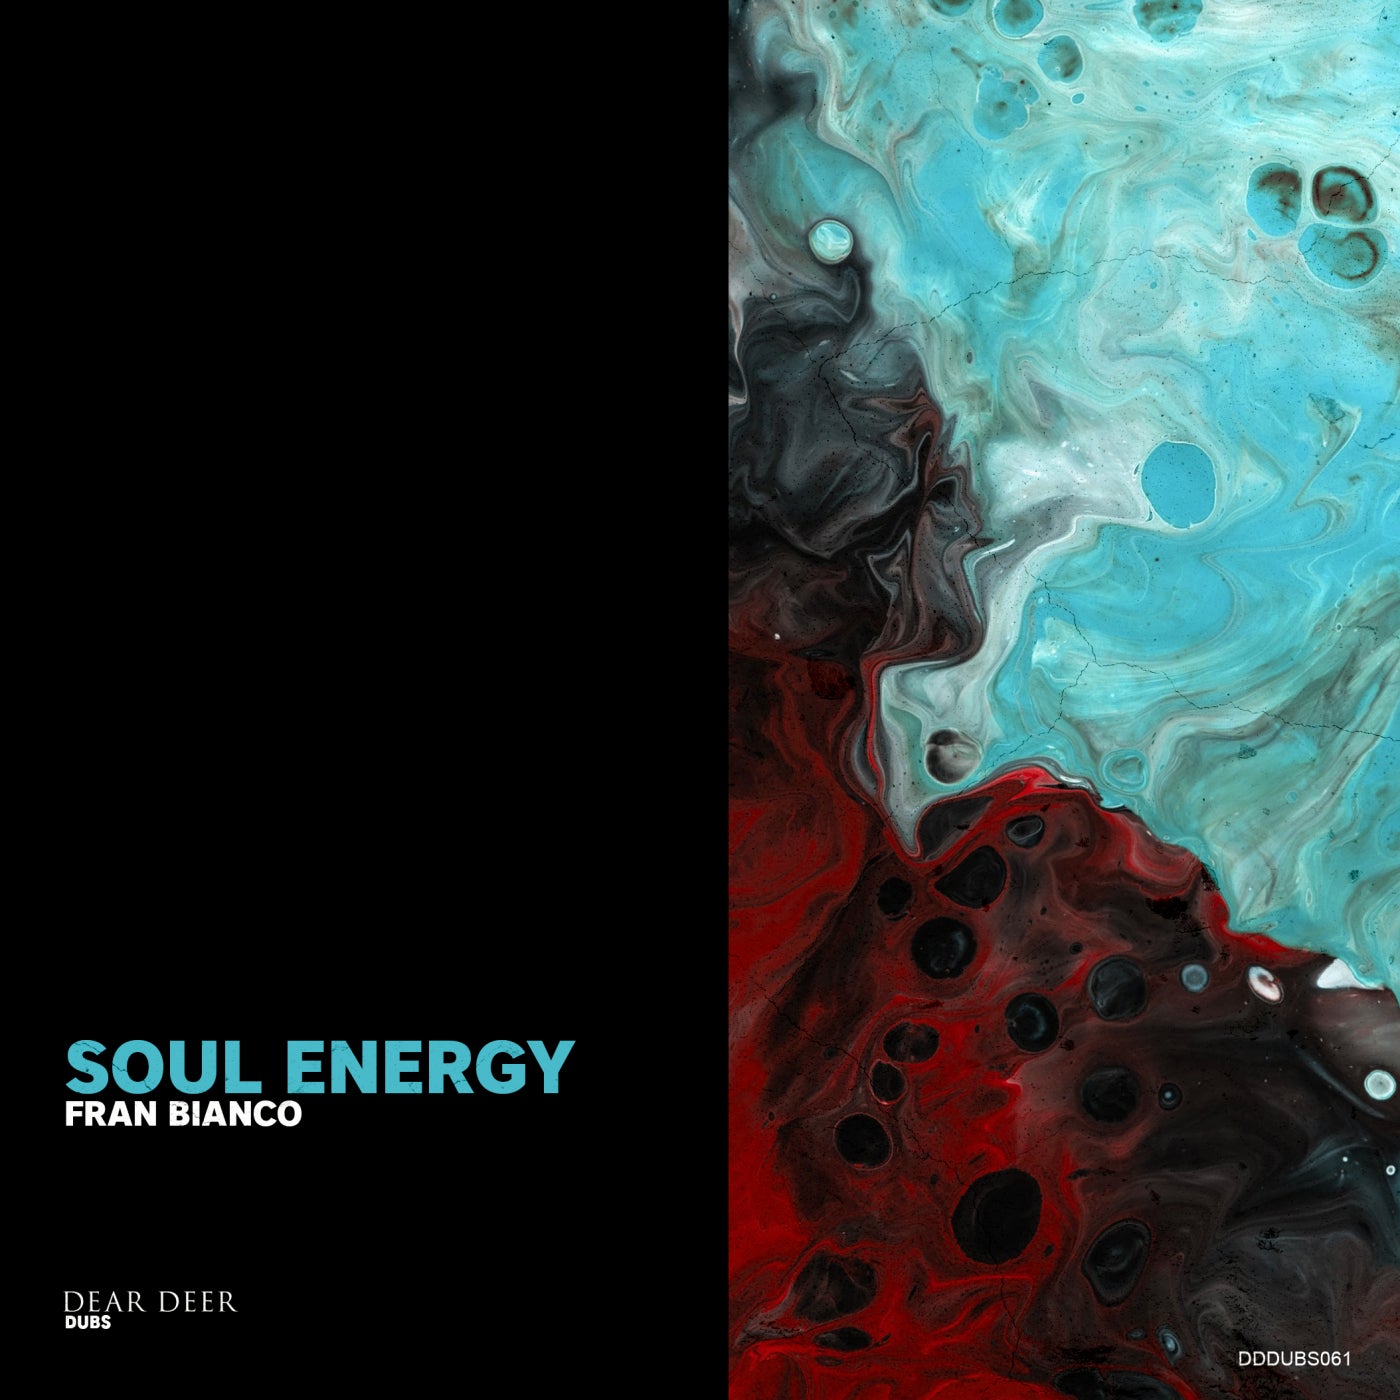 Fran Bianco – Soul Energy [DDDUBS061]